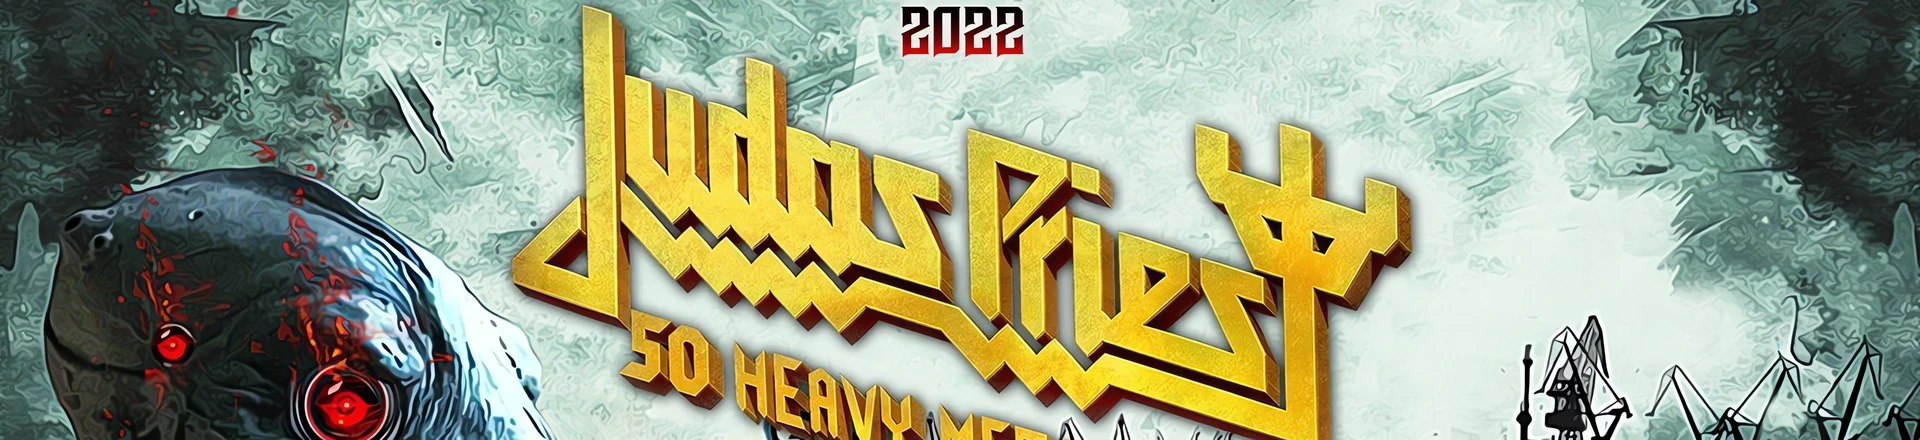 Mystic Festival w czerwcu 2022 roku, Judas Priest headlinerem